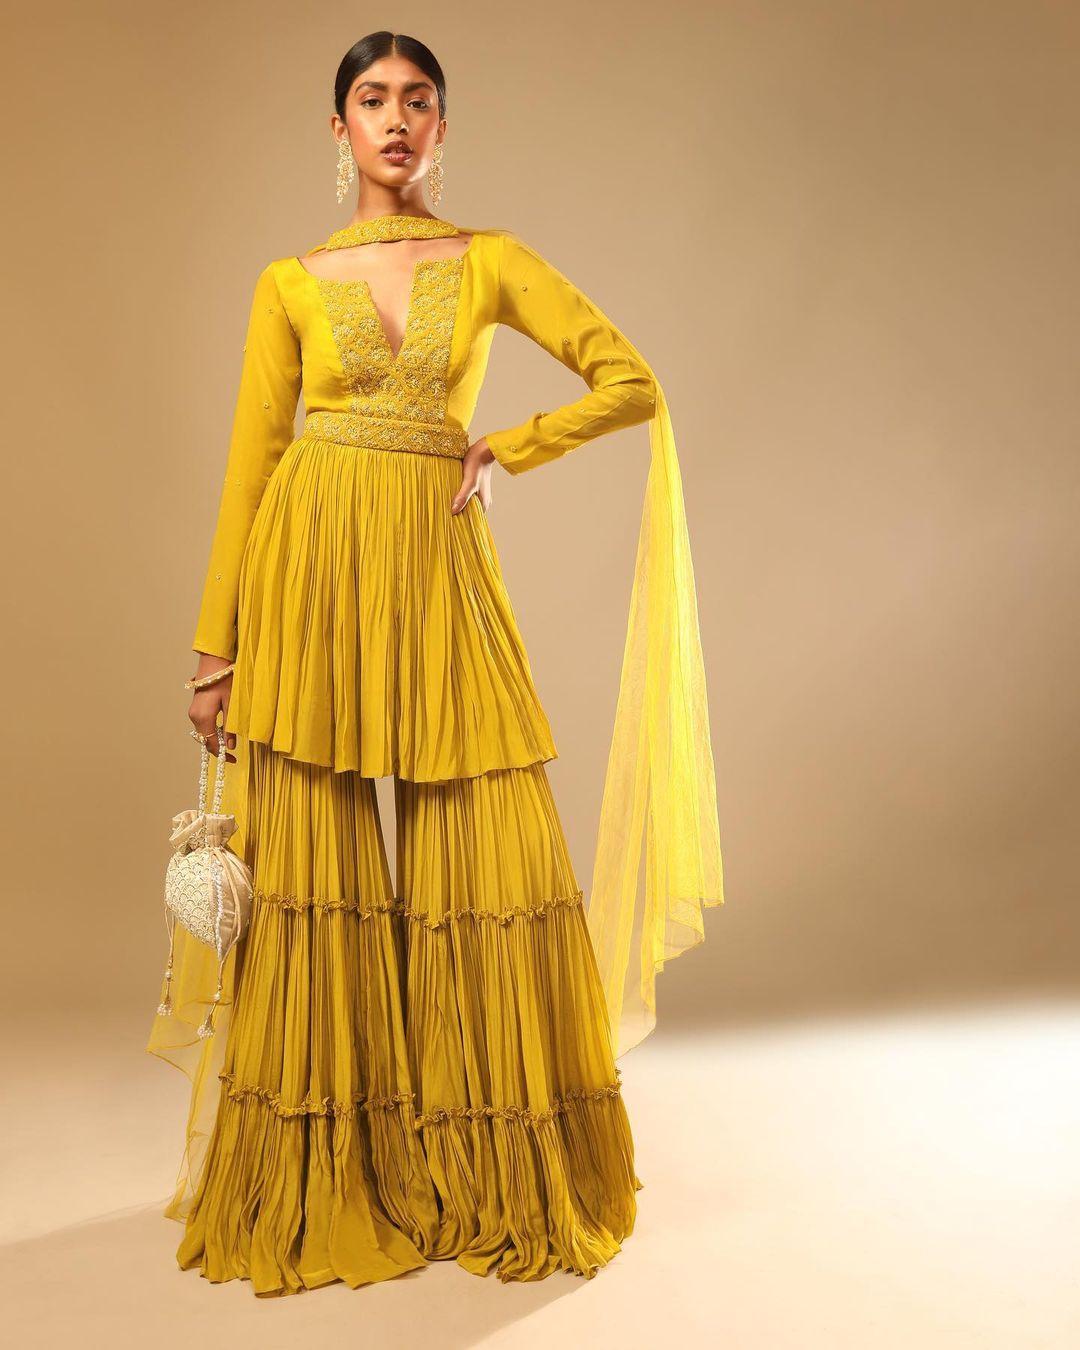 Pakistani Bridal Dress in Classic Sharara Kameez Style – Nameera by Farooq